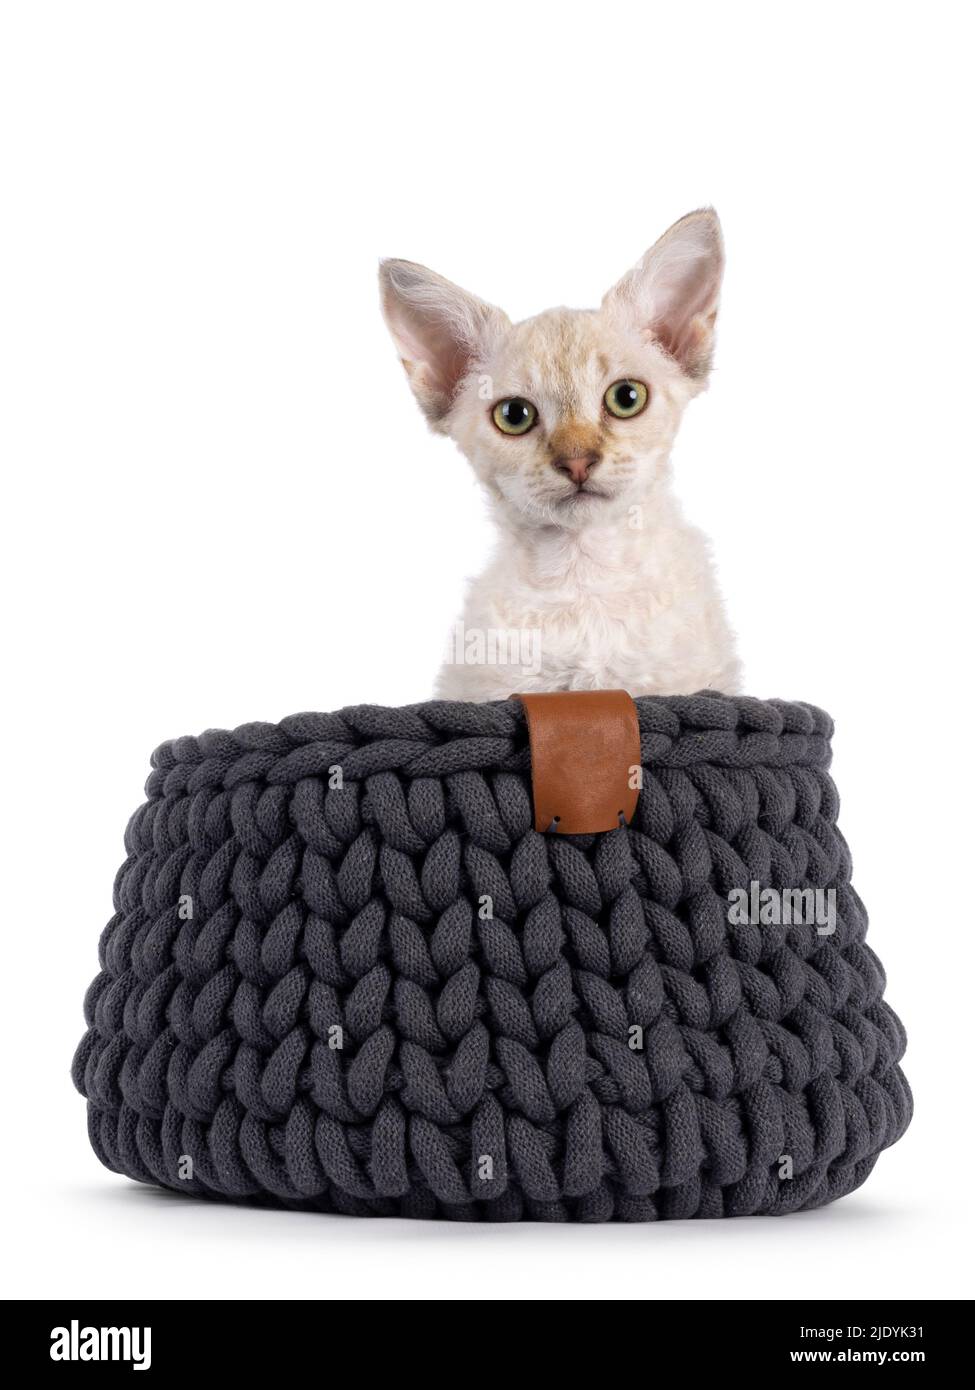 Chocolate tabby blotched tonkinese spitz Langhaar LaPerm Katze Kätzchen, sitzt in einem grauen Strickkorb. Blick auf die Kamera. Isoliert auf einem weißen b Stockfoto